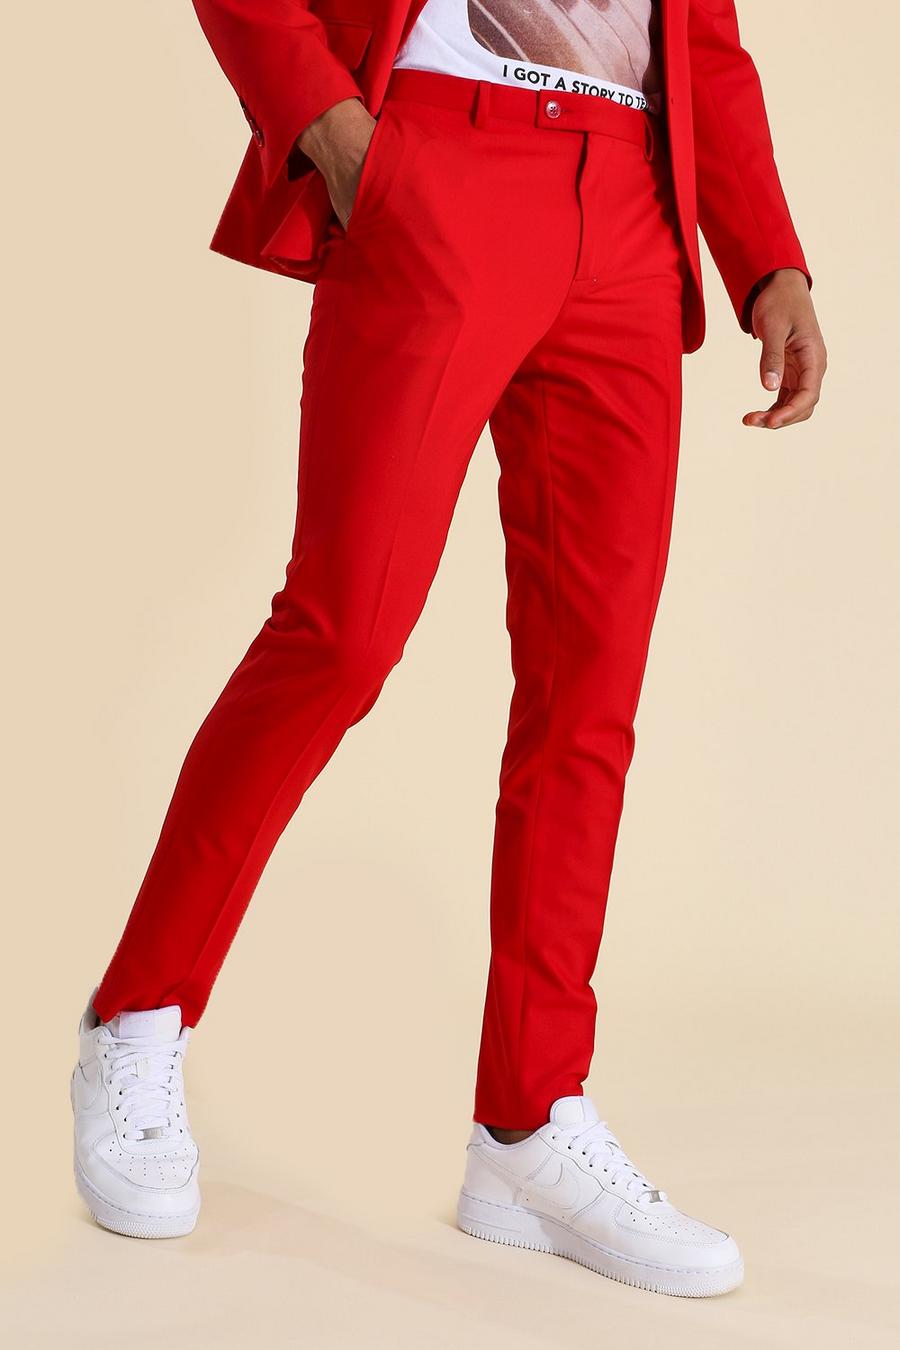 אדום red מכנסי חליפה סקיני אדומים